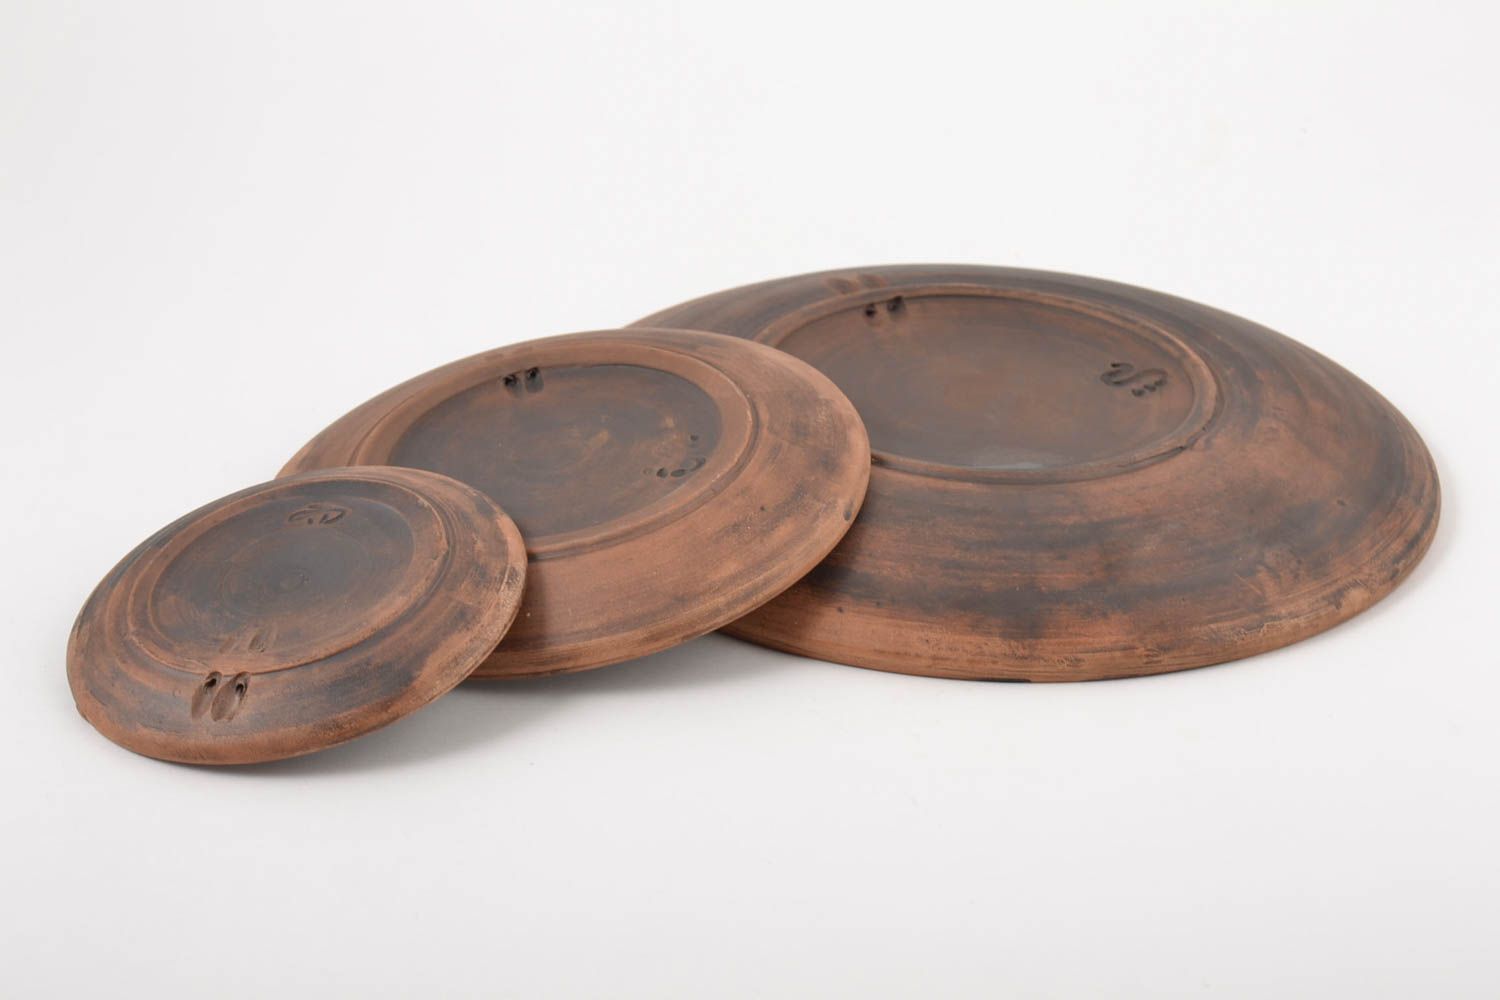 Platos de cerámica decorados hechos a mano utensilios de cocina vajilla moderna foto 4